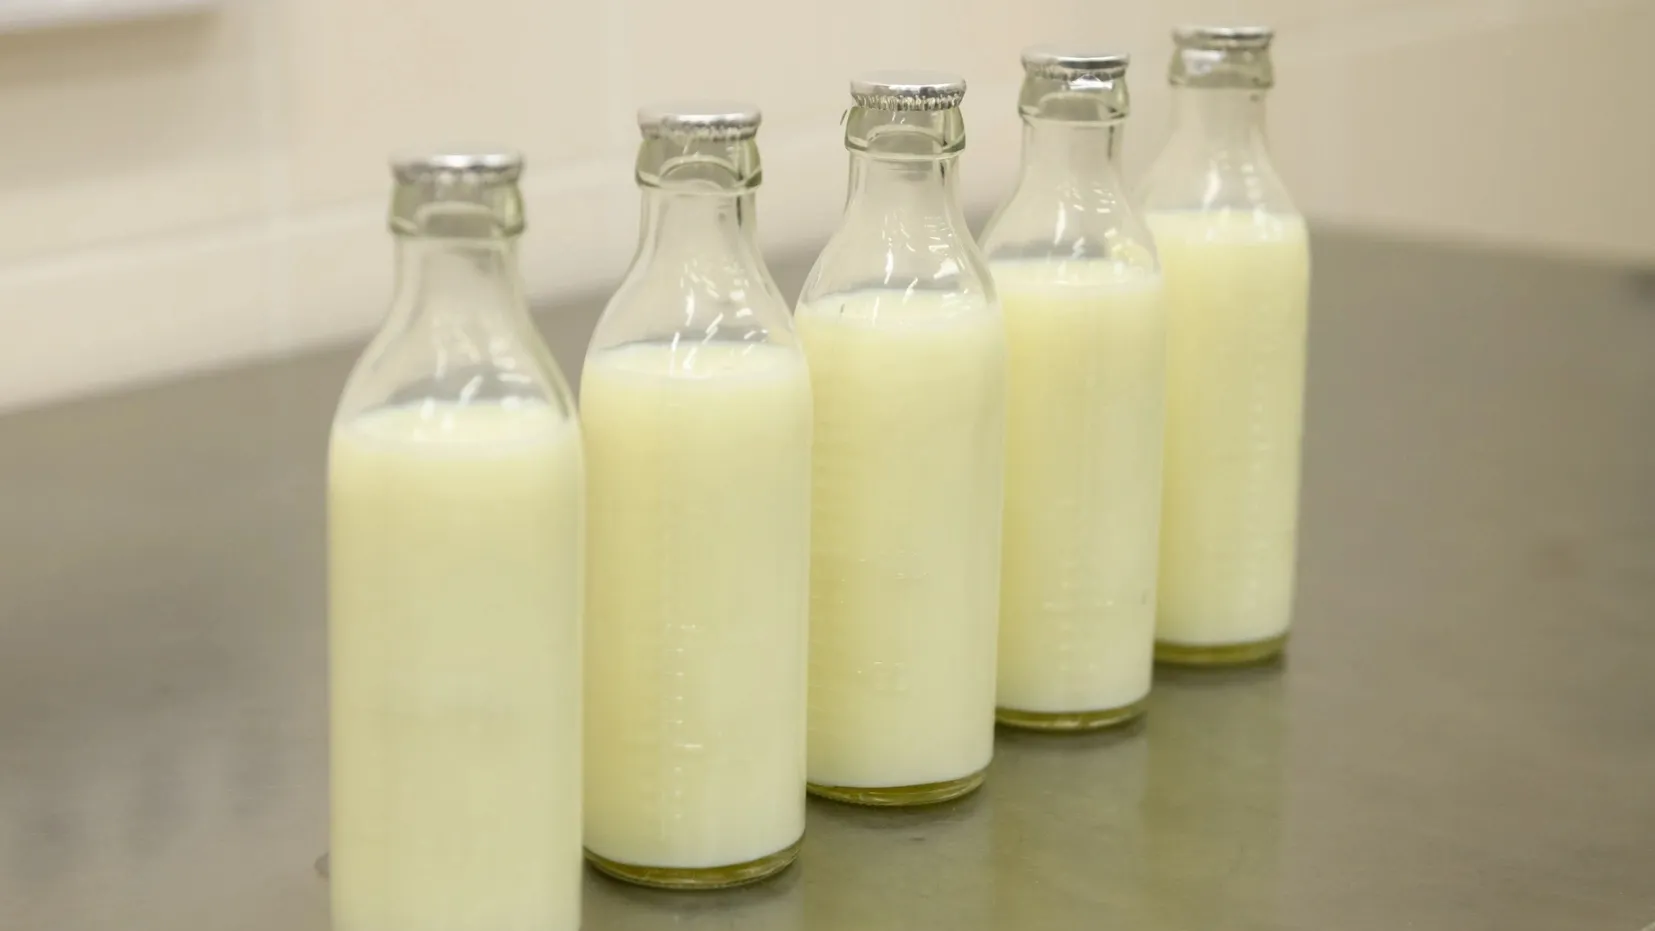 Экологически чистая продукция кухни готовится только из натурального молока. Фото: vk.com/anoyabrsk